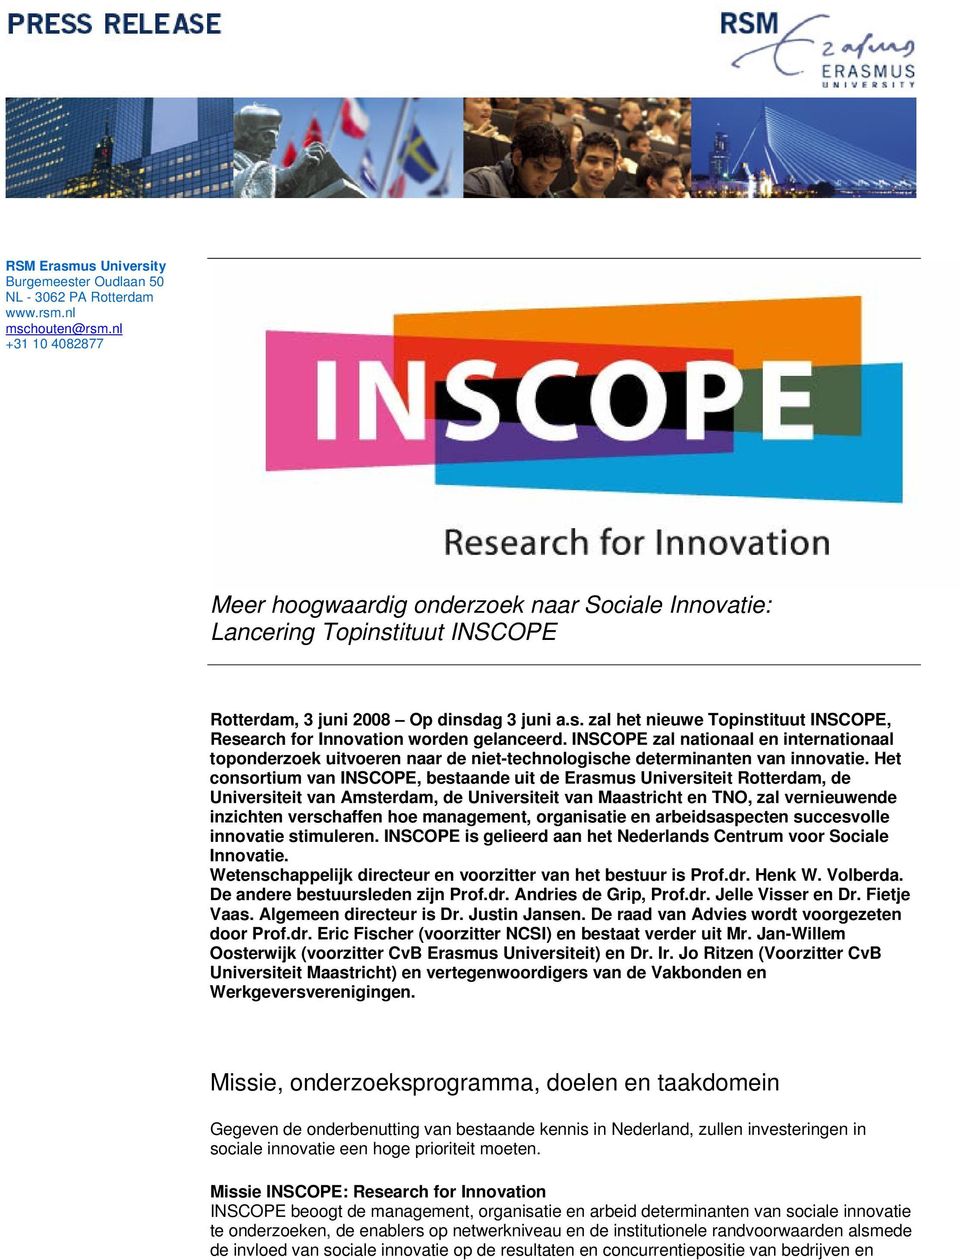 Het consortium van INSCOPE, bestaande uit de Erasmus Universiteit Rotterdam, de Universiteit van Amsterdam, de Universiteit van Maastricht en TNO, zal vernieuwende inzichten verschaffen hoe